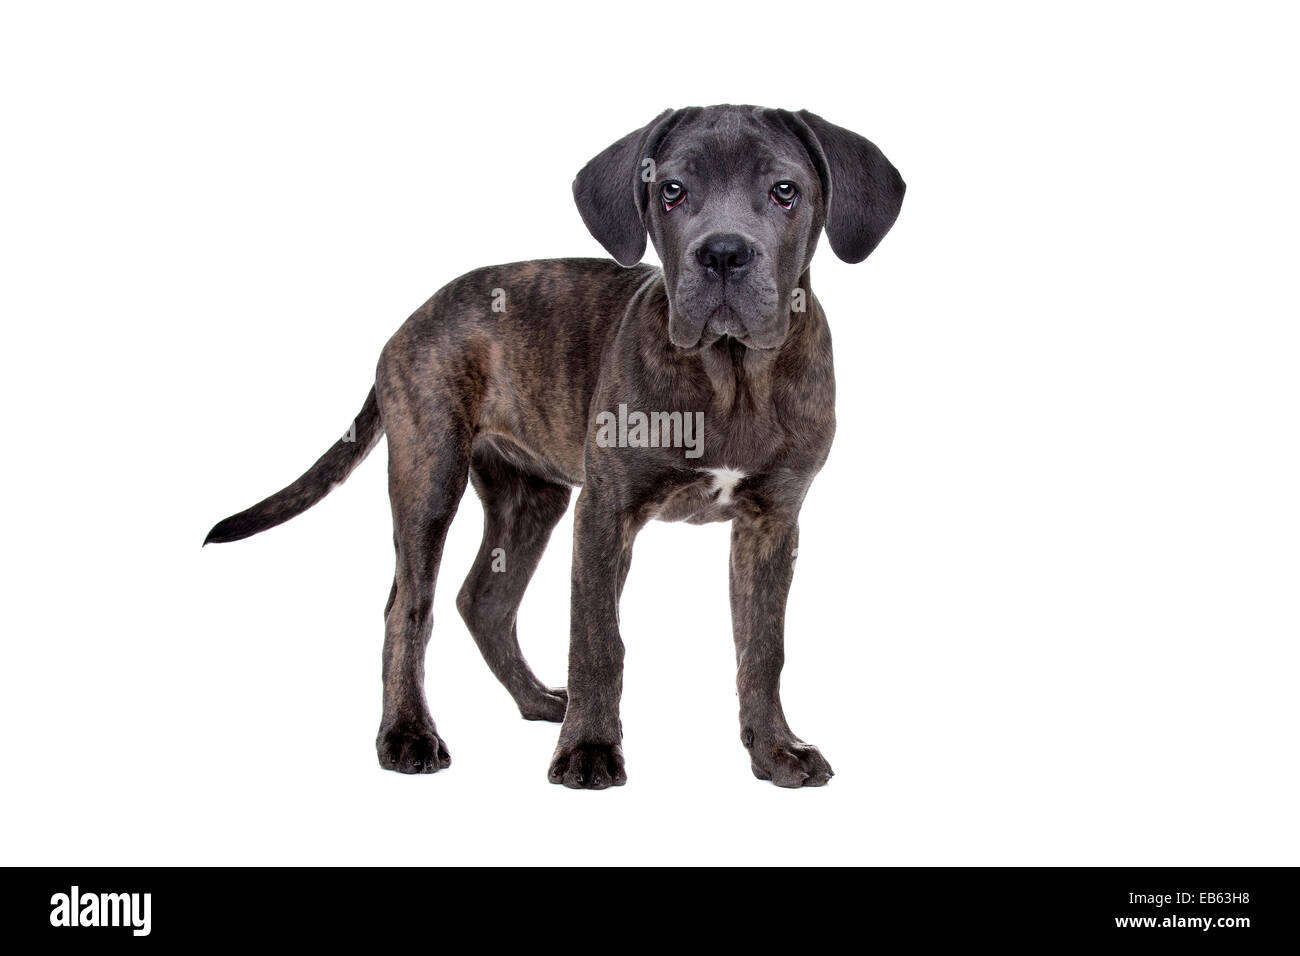 Cane Corso Welpen Hund stehend vor einem weißen Hintergrund grau Stockfoto